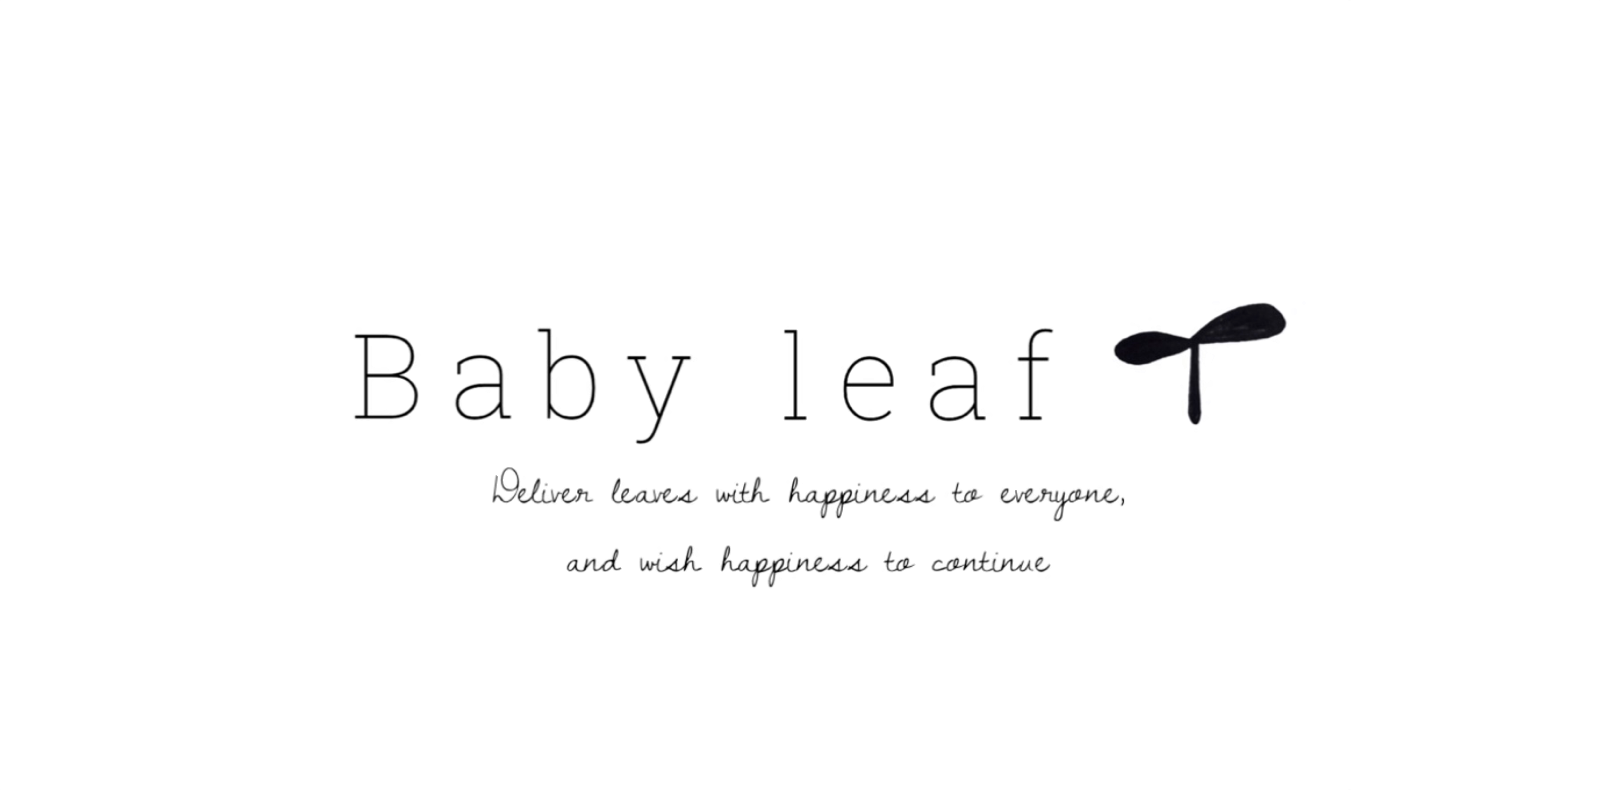 Baby leaf